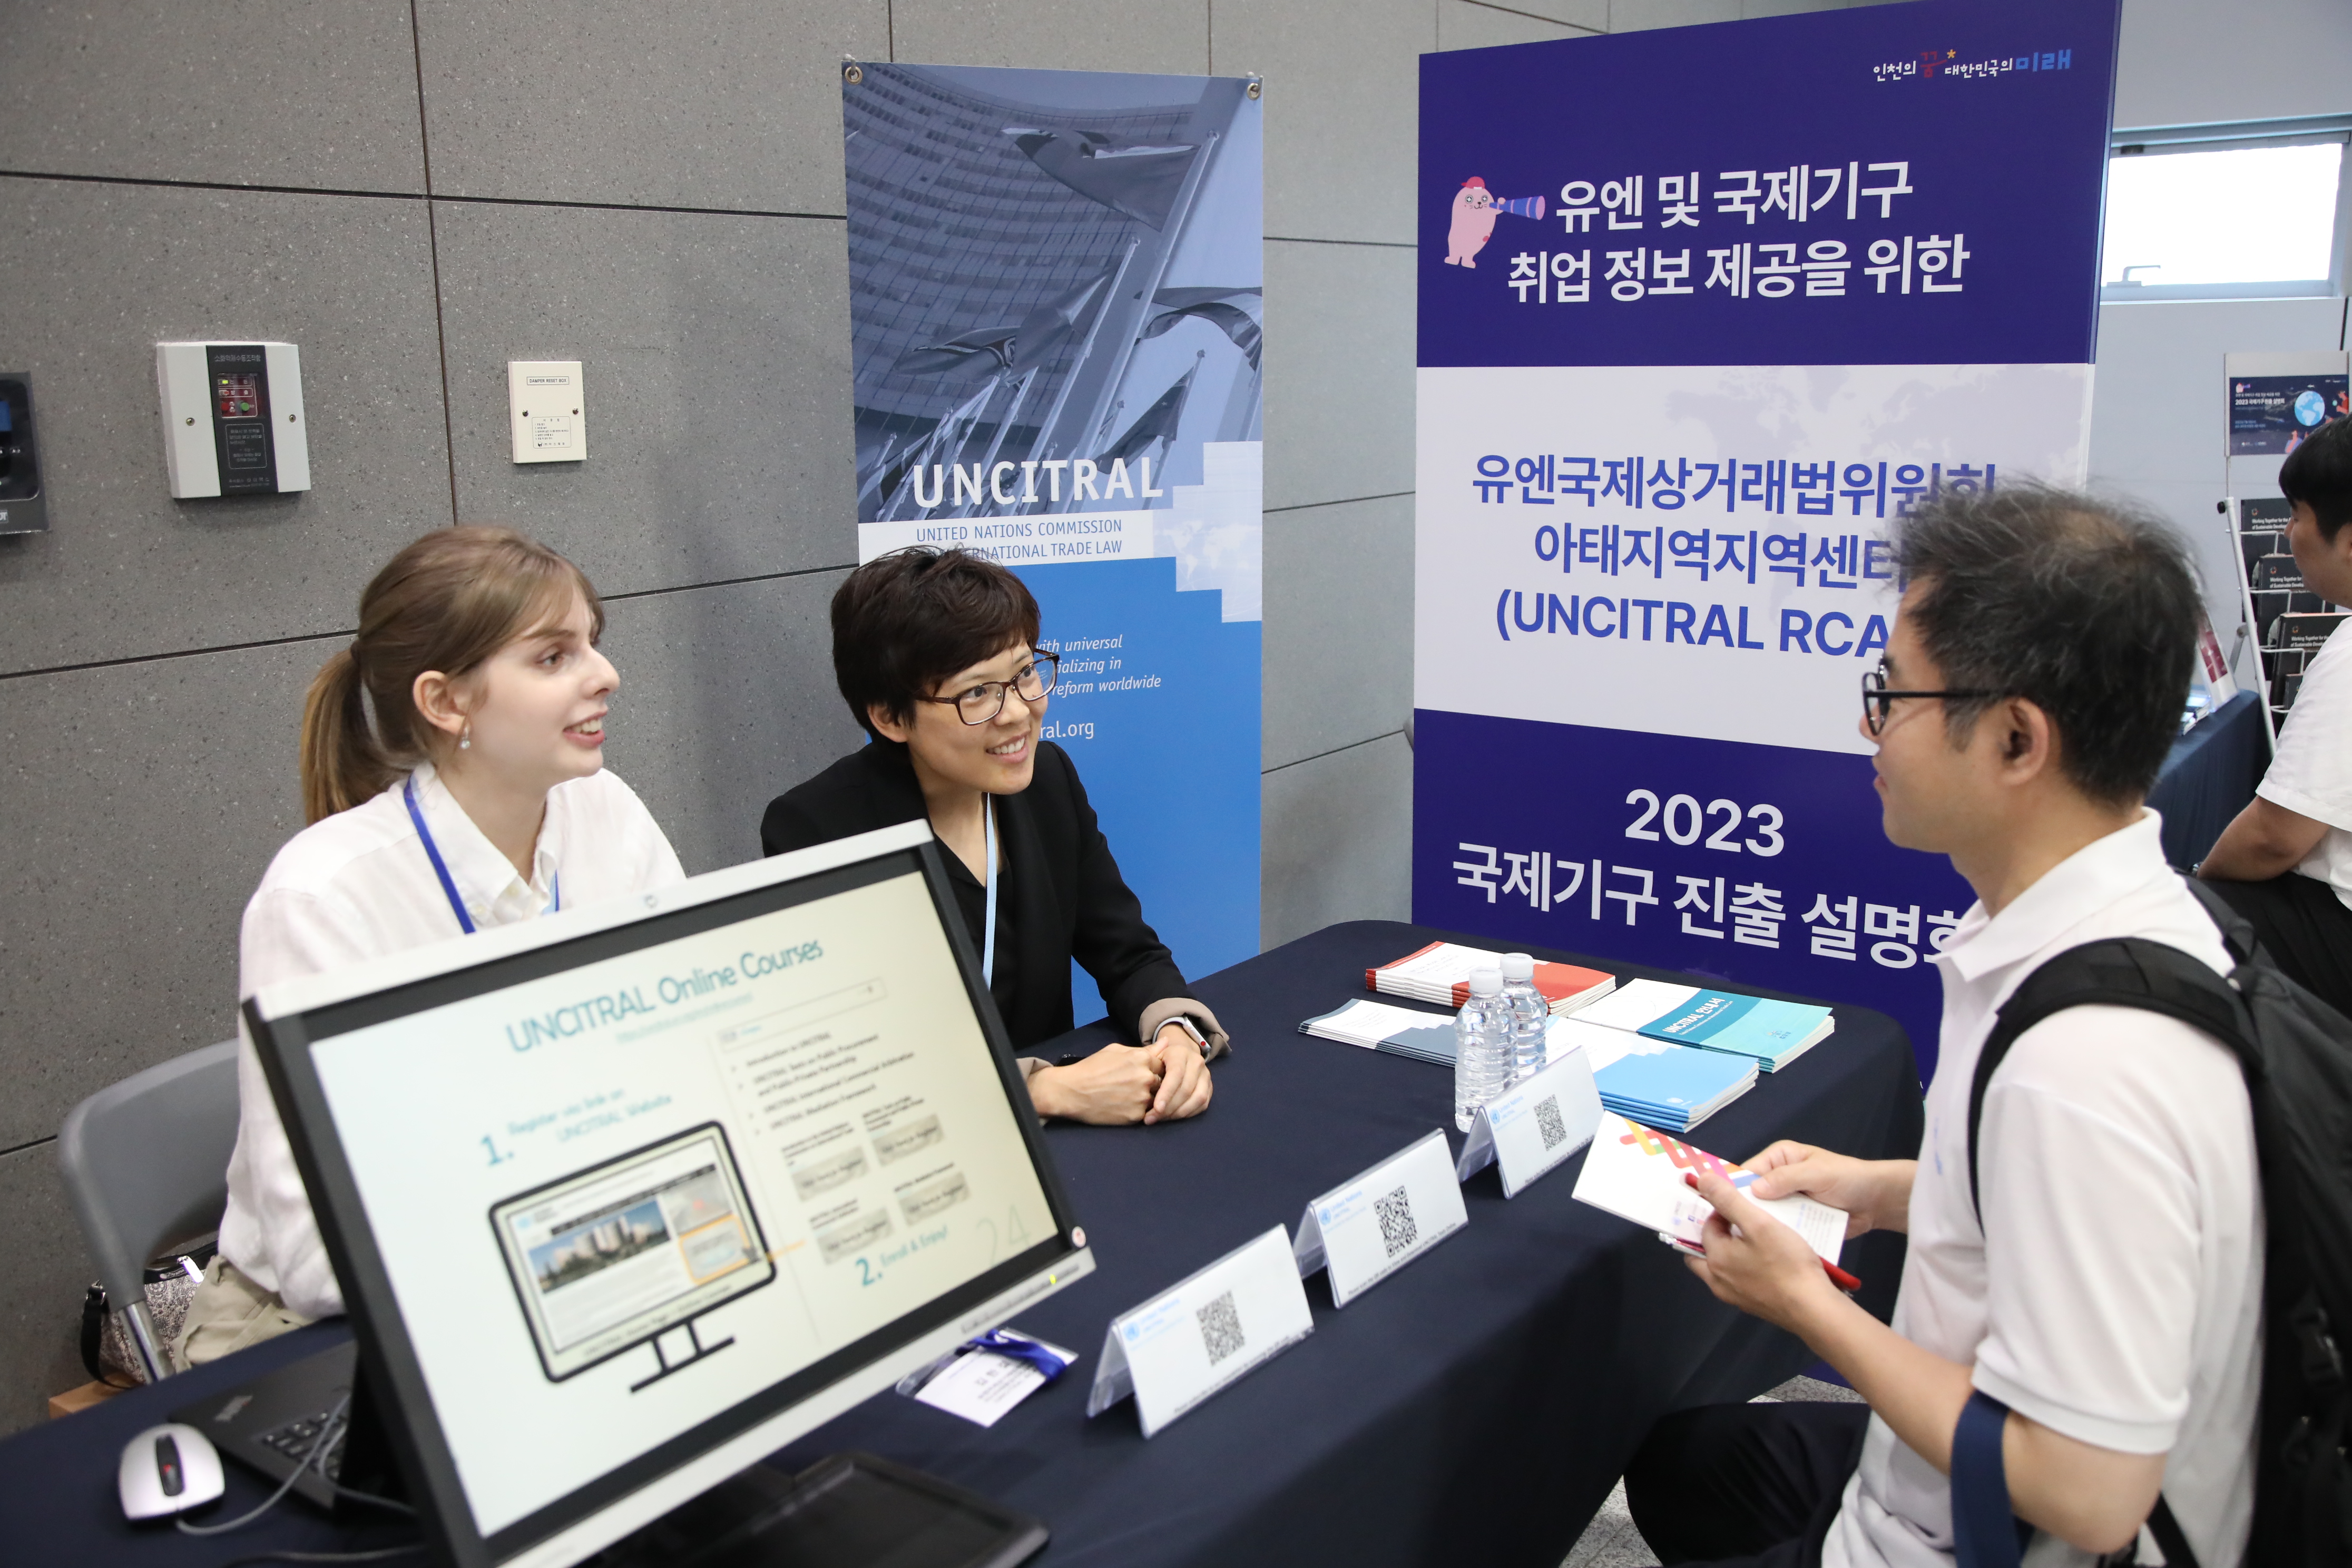 국제기구 진출 기회, 글로벌 도시 인천에서 찾는다 관련 이미지